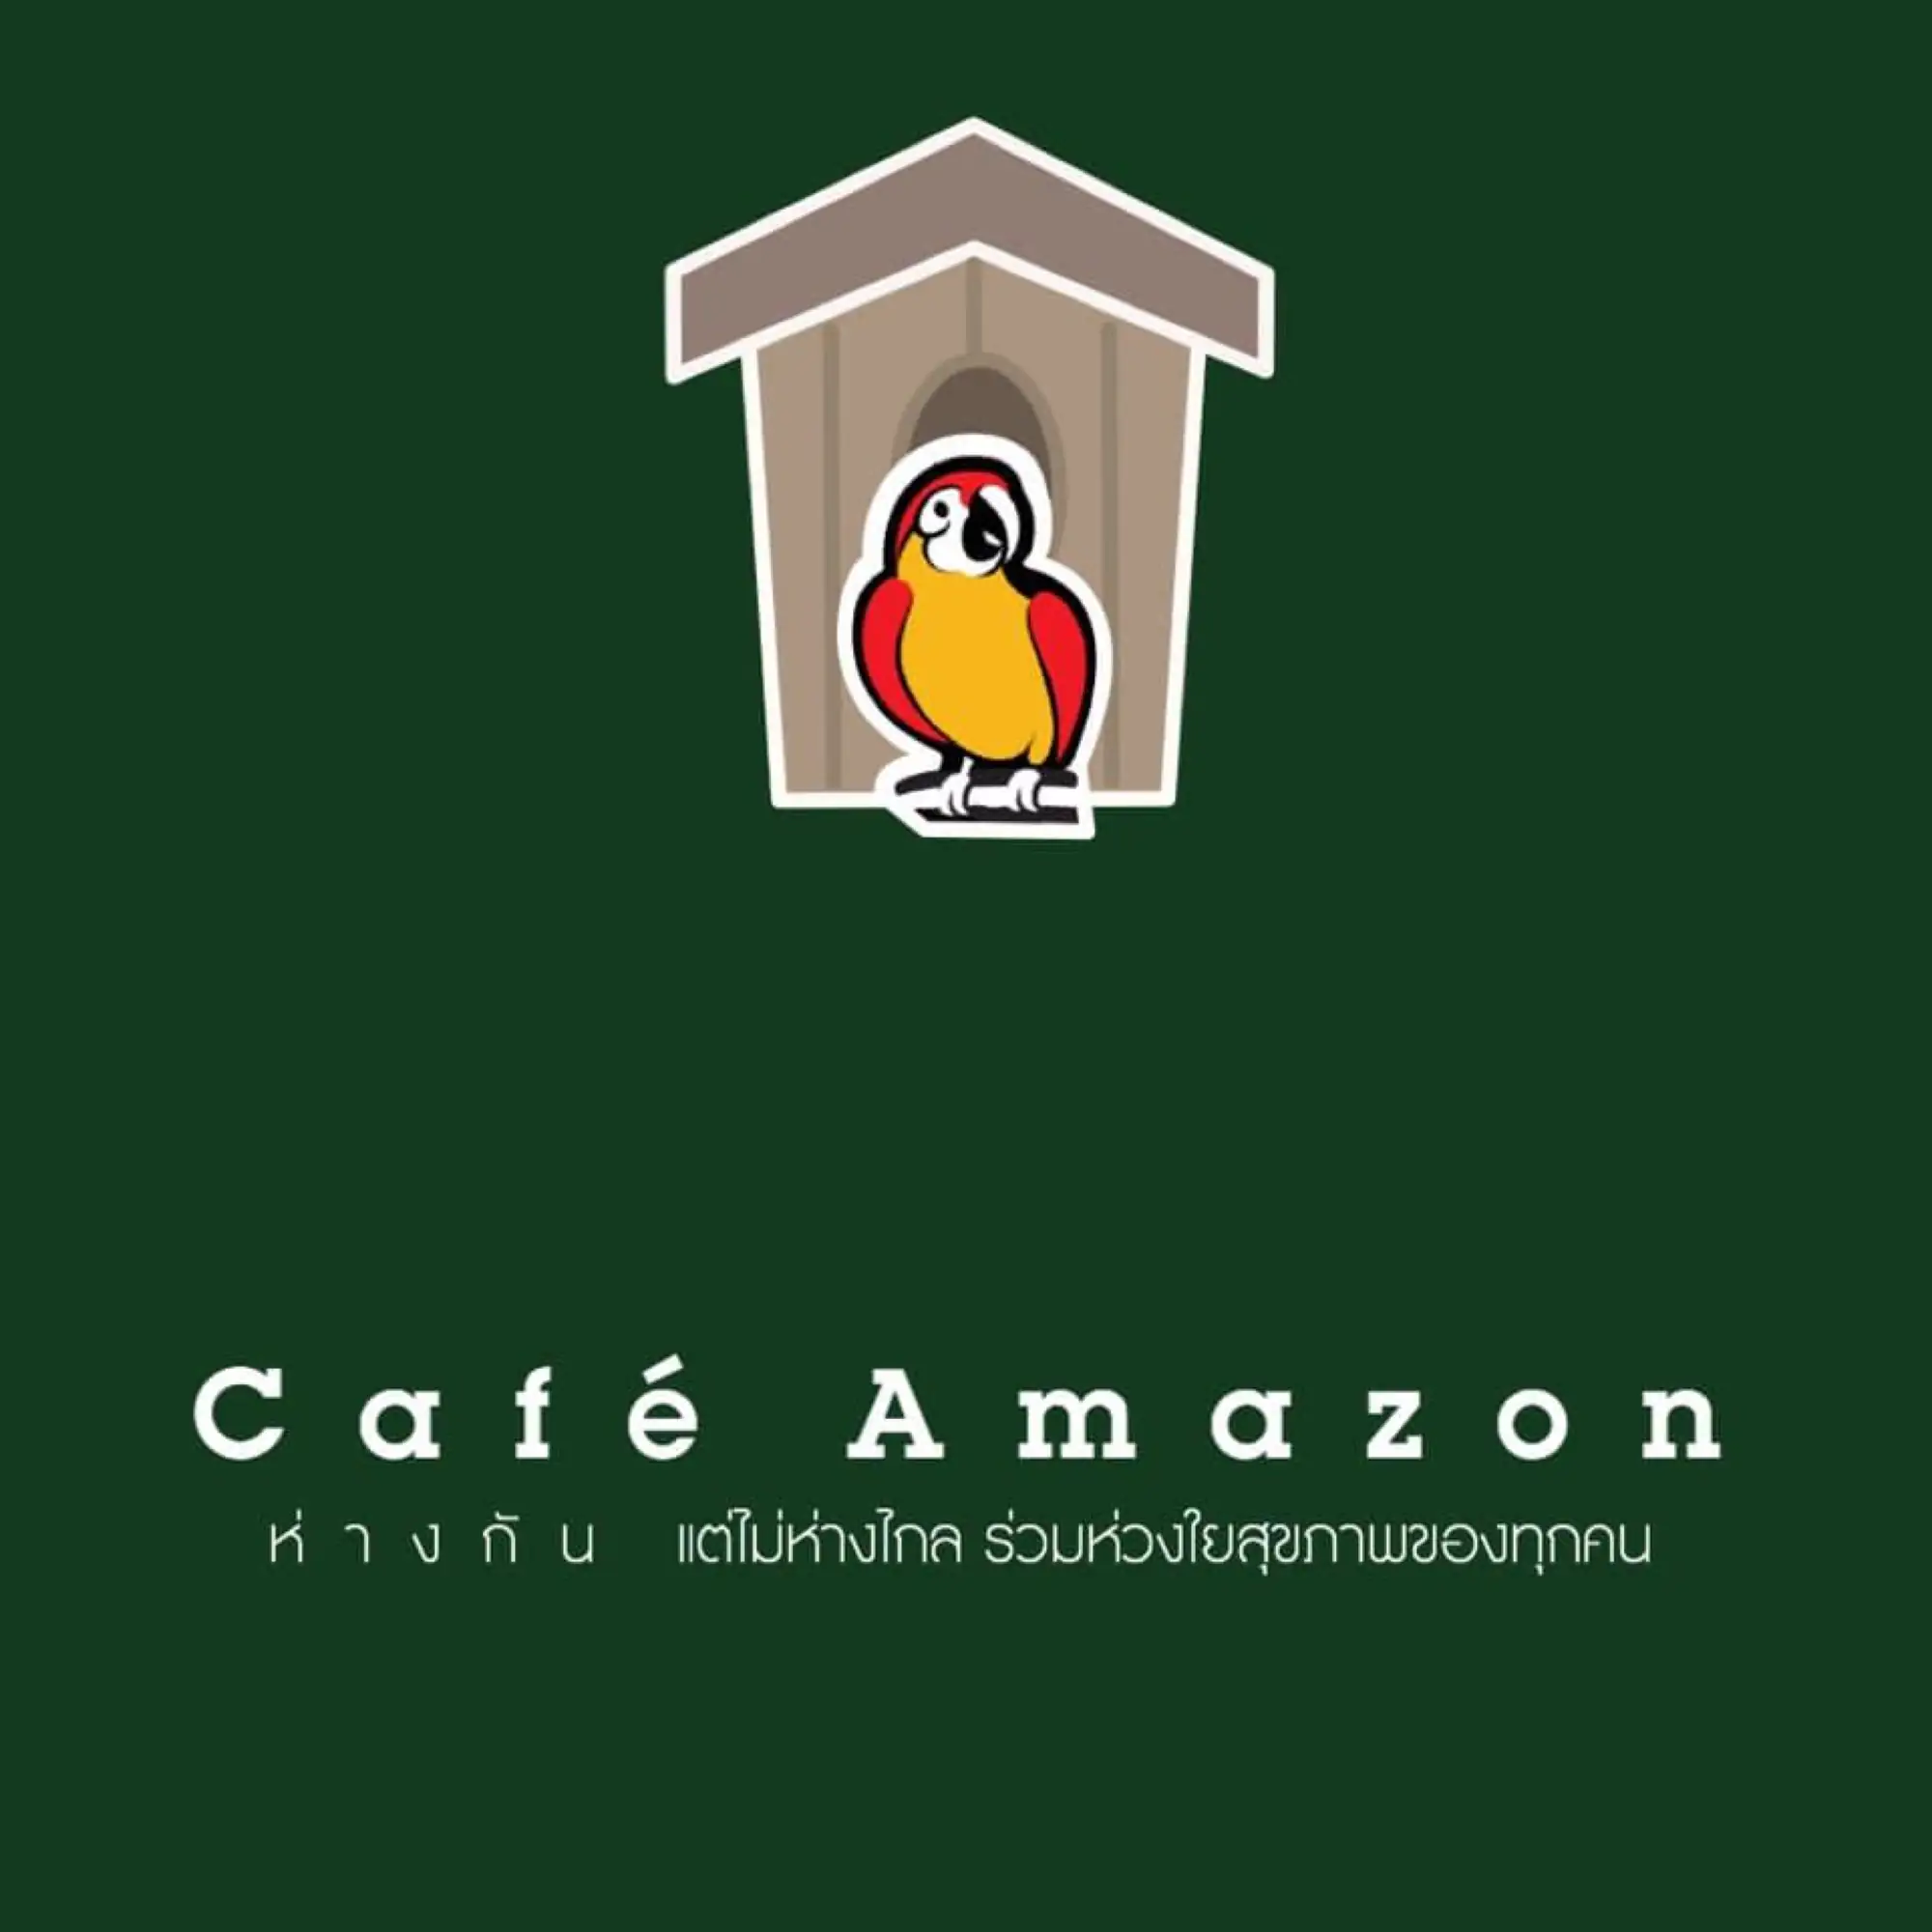 CAFE AMAZON将商标中的鸟儿放回鸟巢，代表居家隔离。（品牌图片）